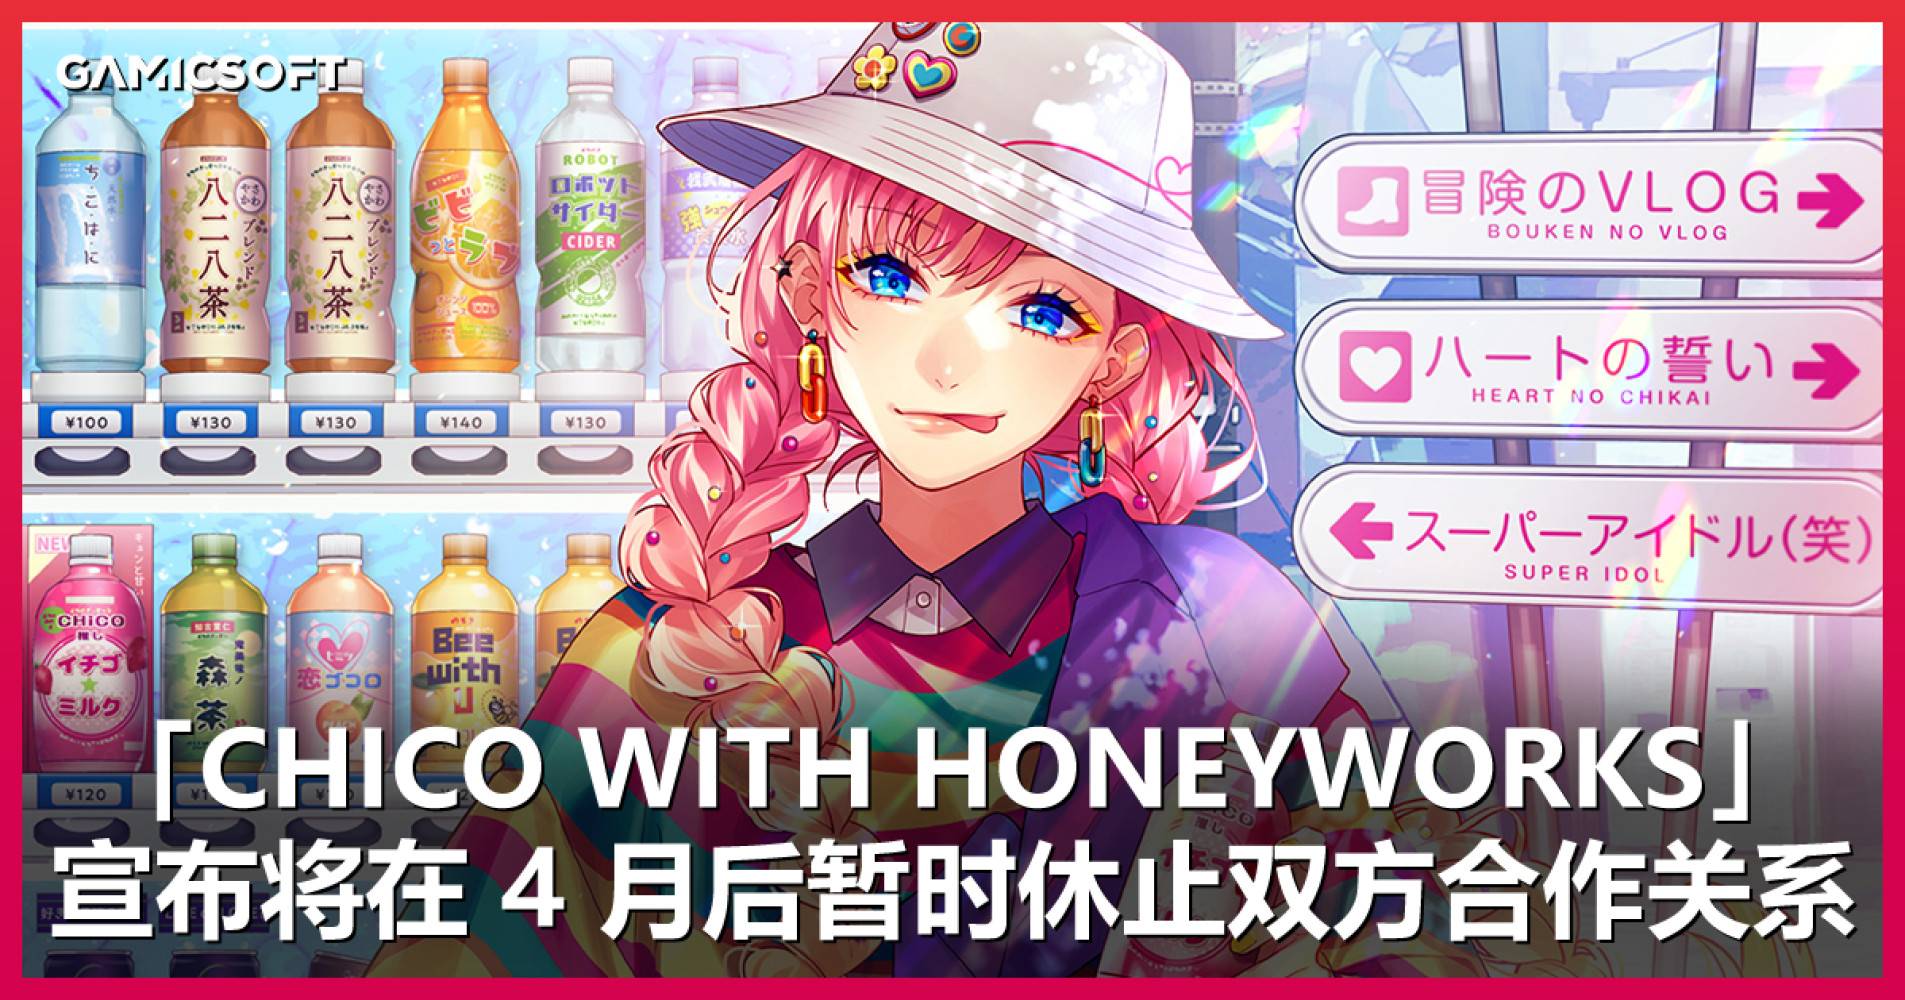 从学生时代听到现在...音乐组合「CHiCO with HoneyWorks」宣布将在 4 月巡回演出后暂时休止活动。